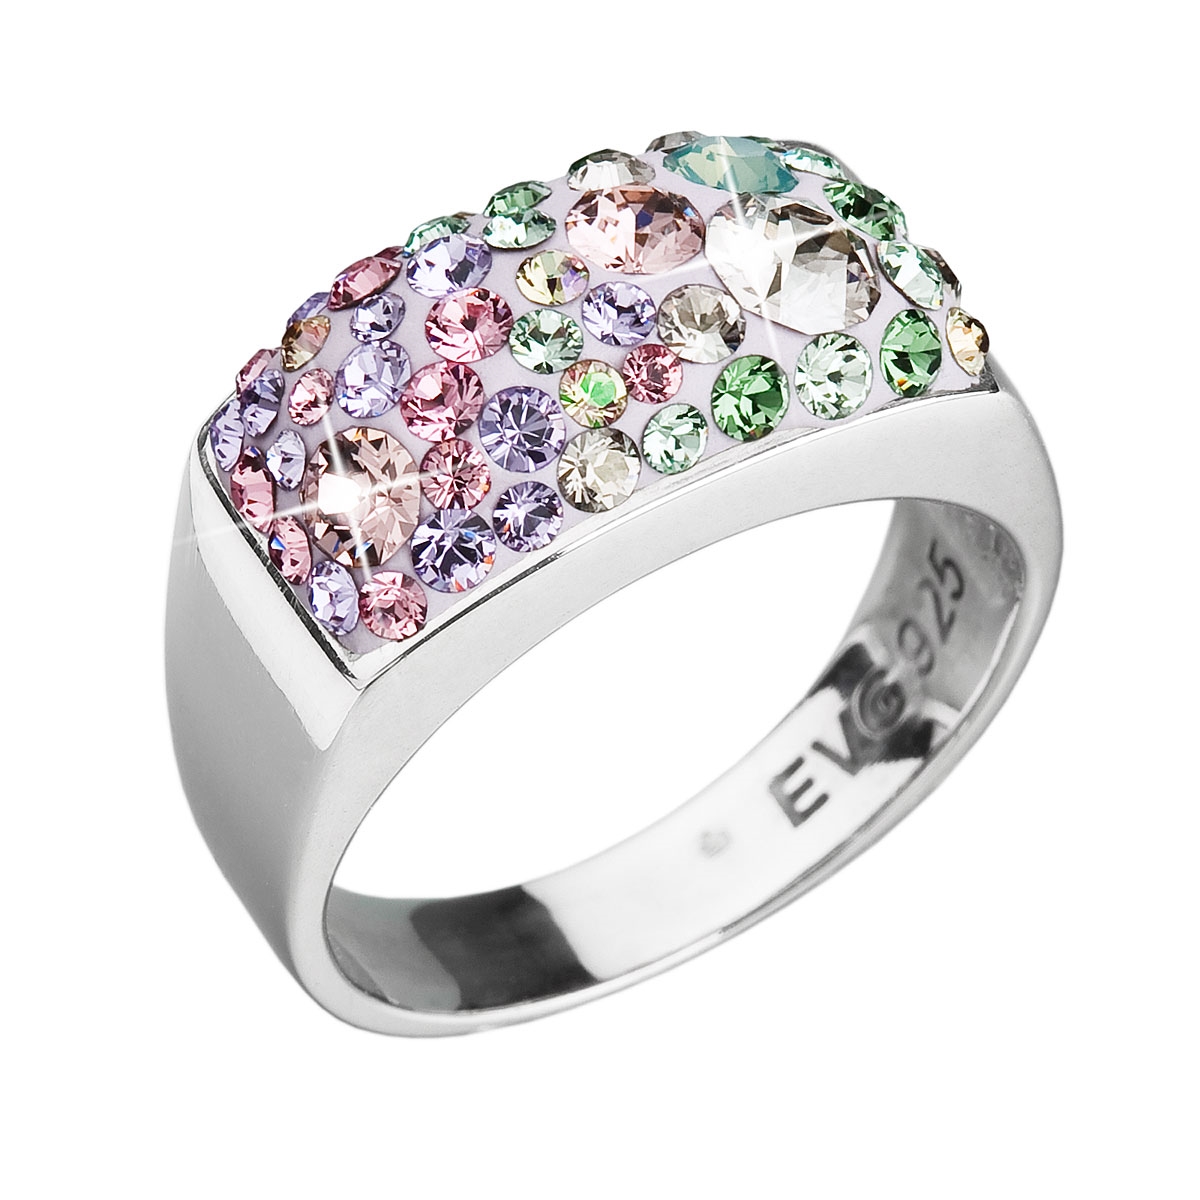 Strieborný prsteň s kryštálmi Swarovski Sakura